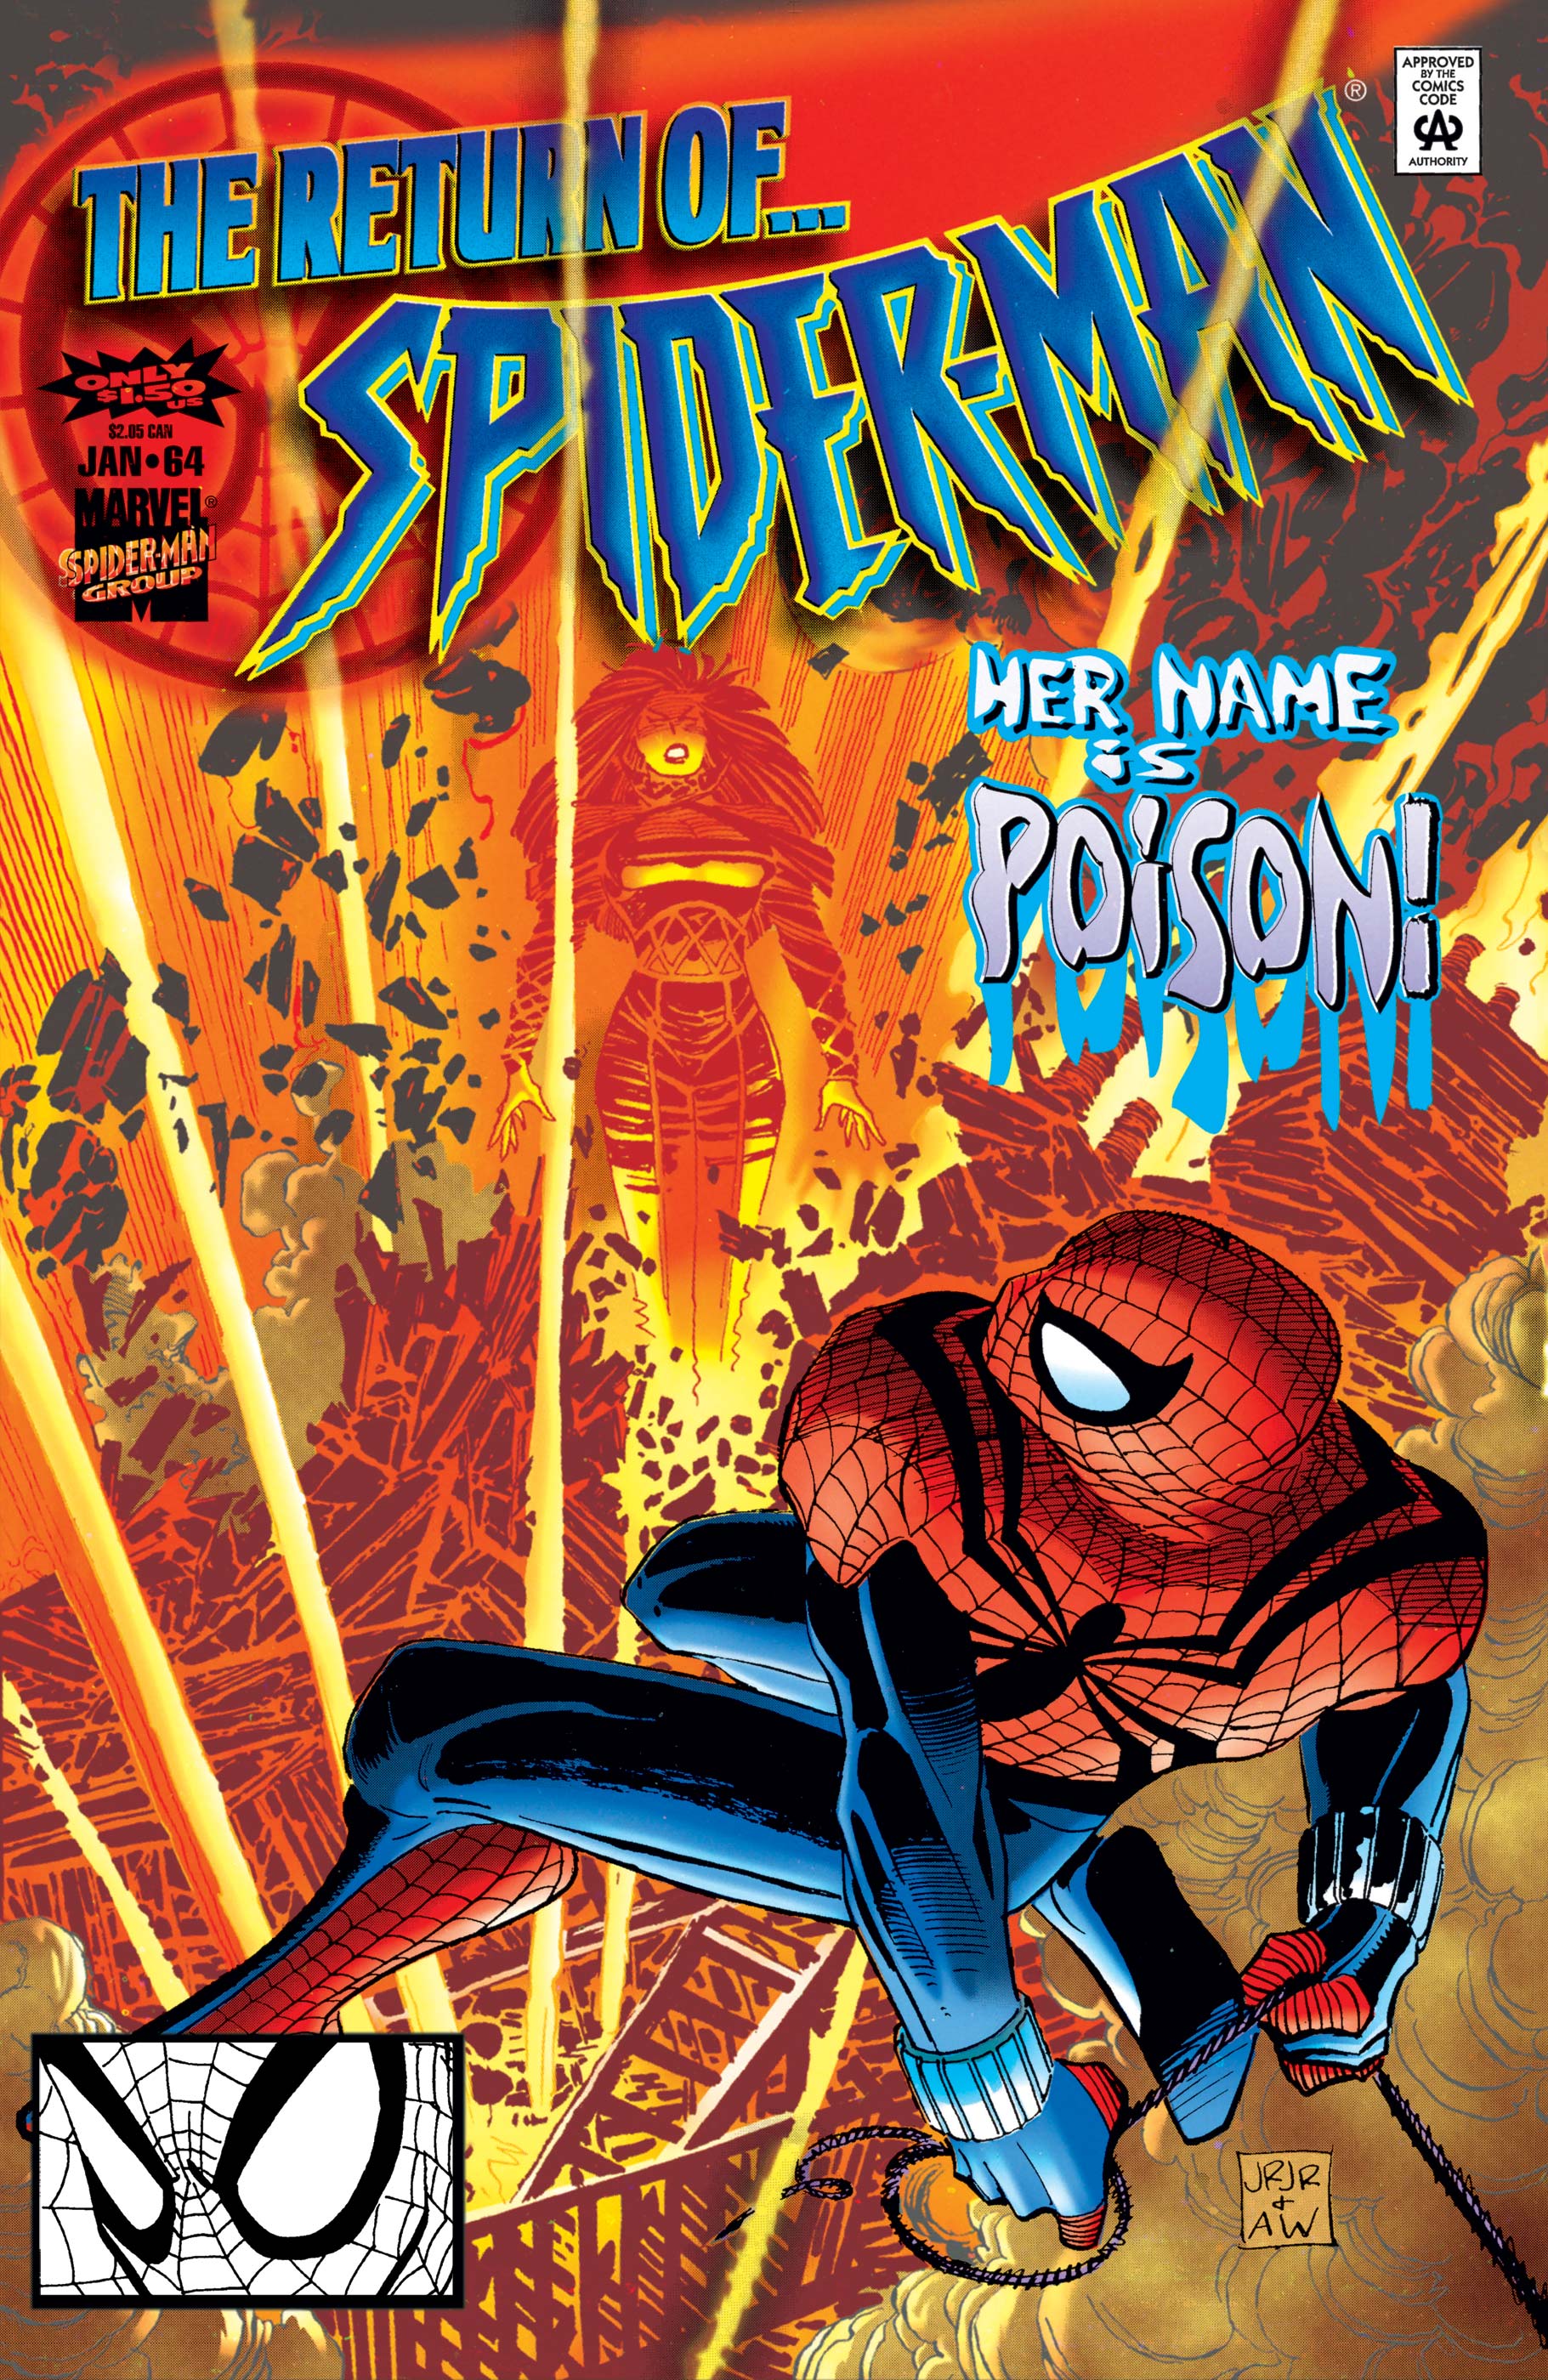 Spider-Man (1990) #64